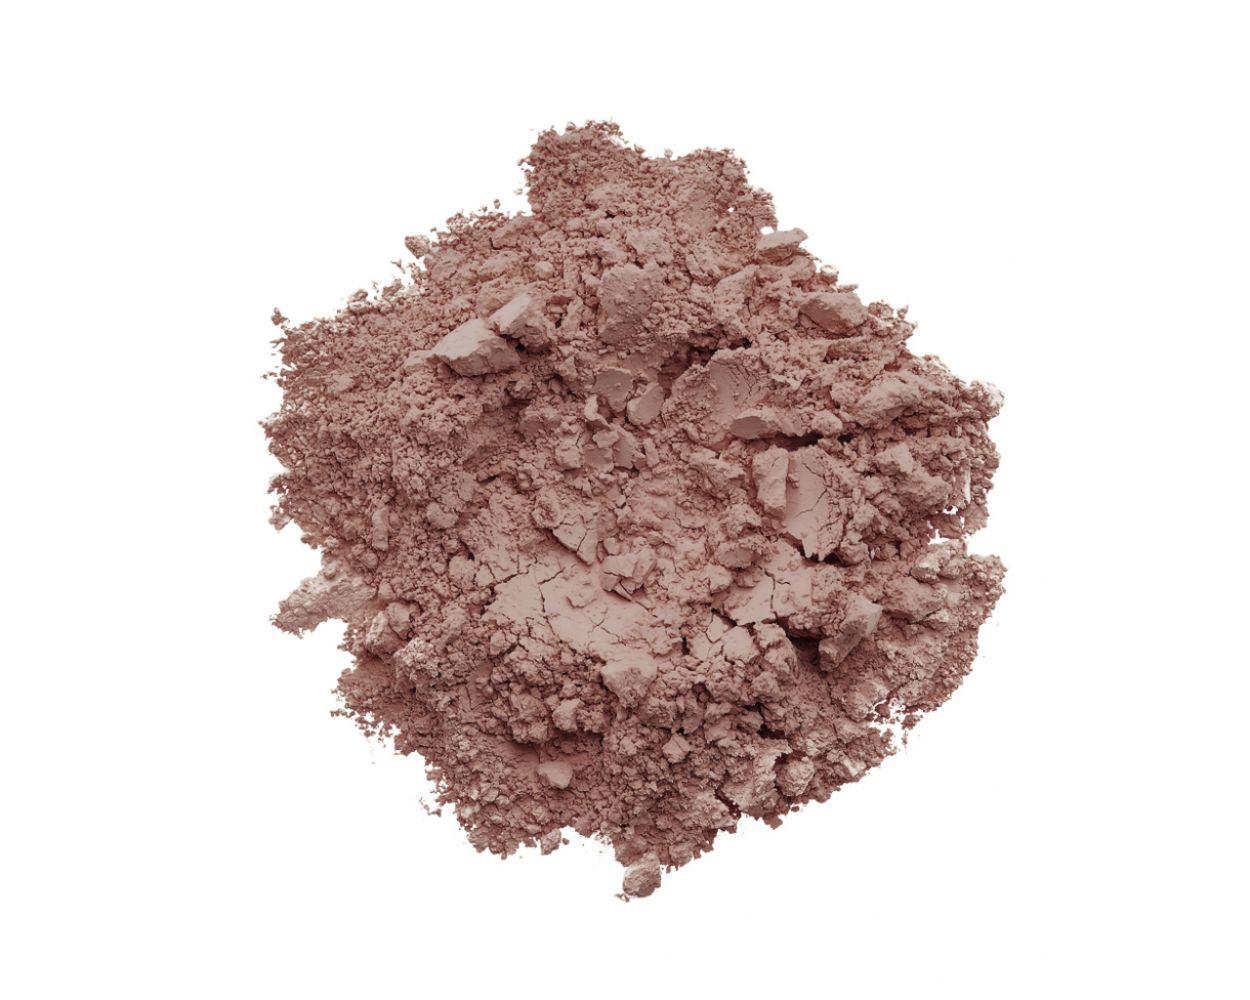 INIKA - Mineral Blush Puff Pot - Rosy Glow